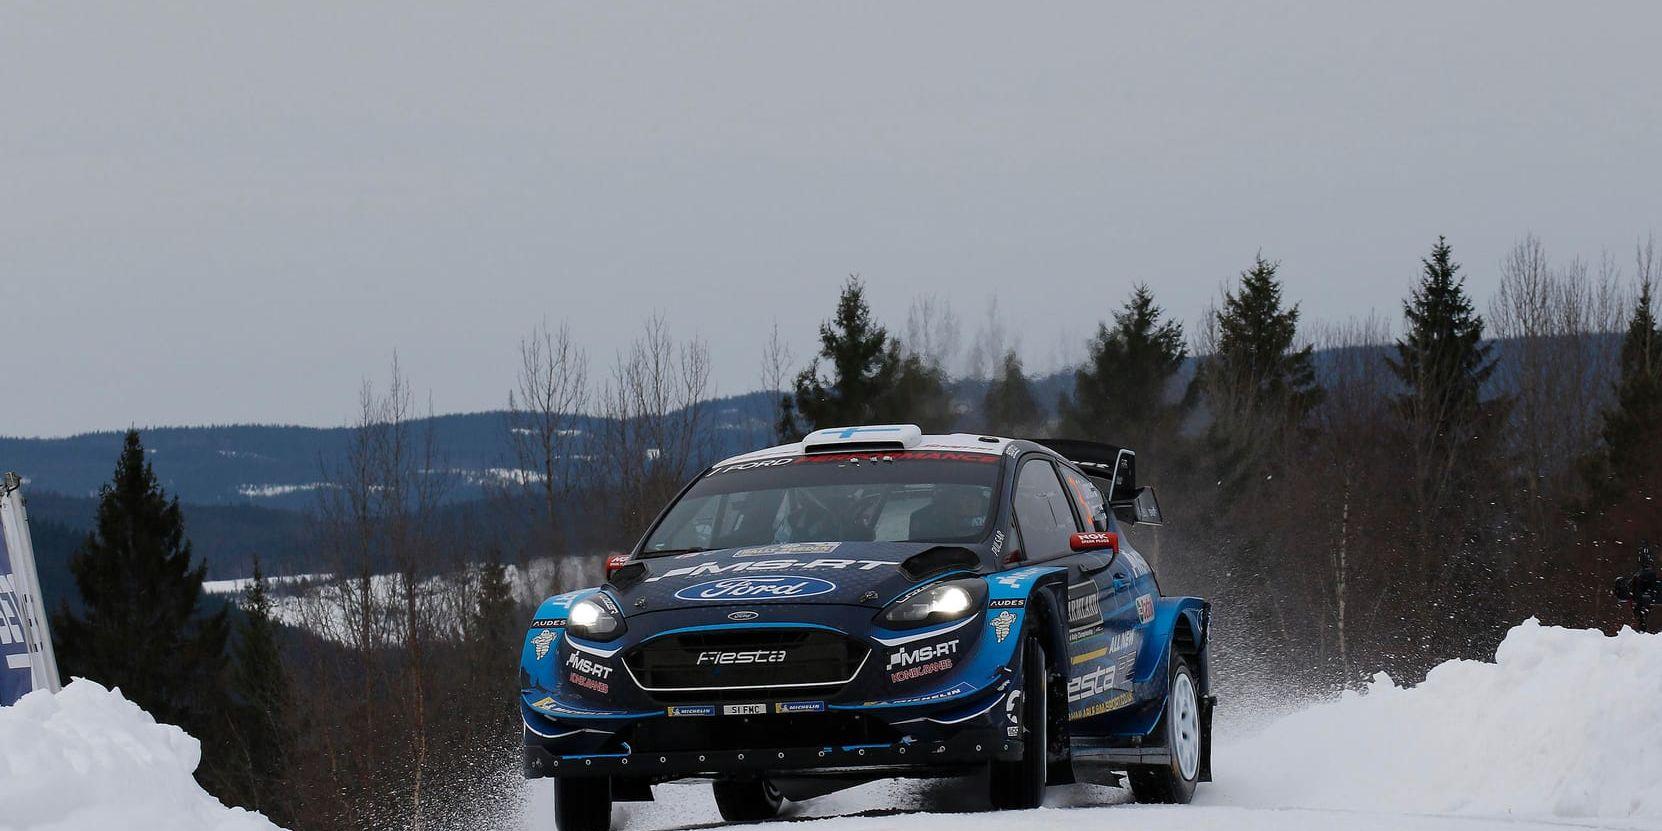 Efter sex körda specialsträckor under fredagen leder finländaren Teemu Suninen Svenska rallyt. Han har aldrig tidigare vunnit ett WRC-rally.